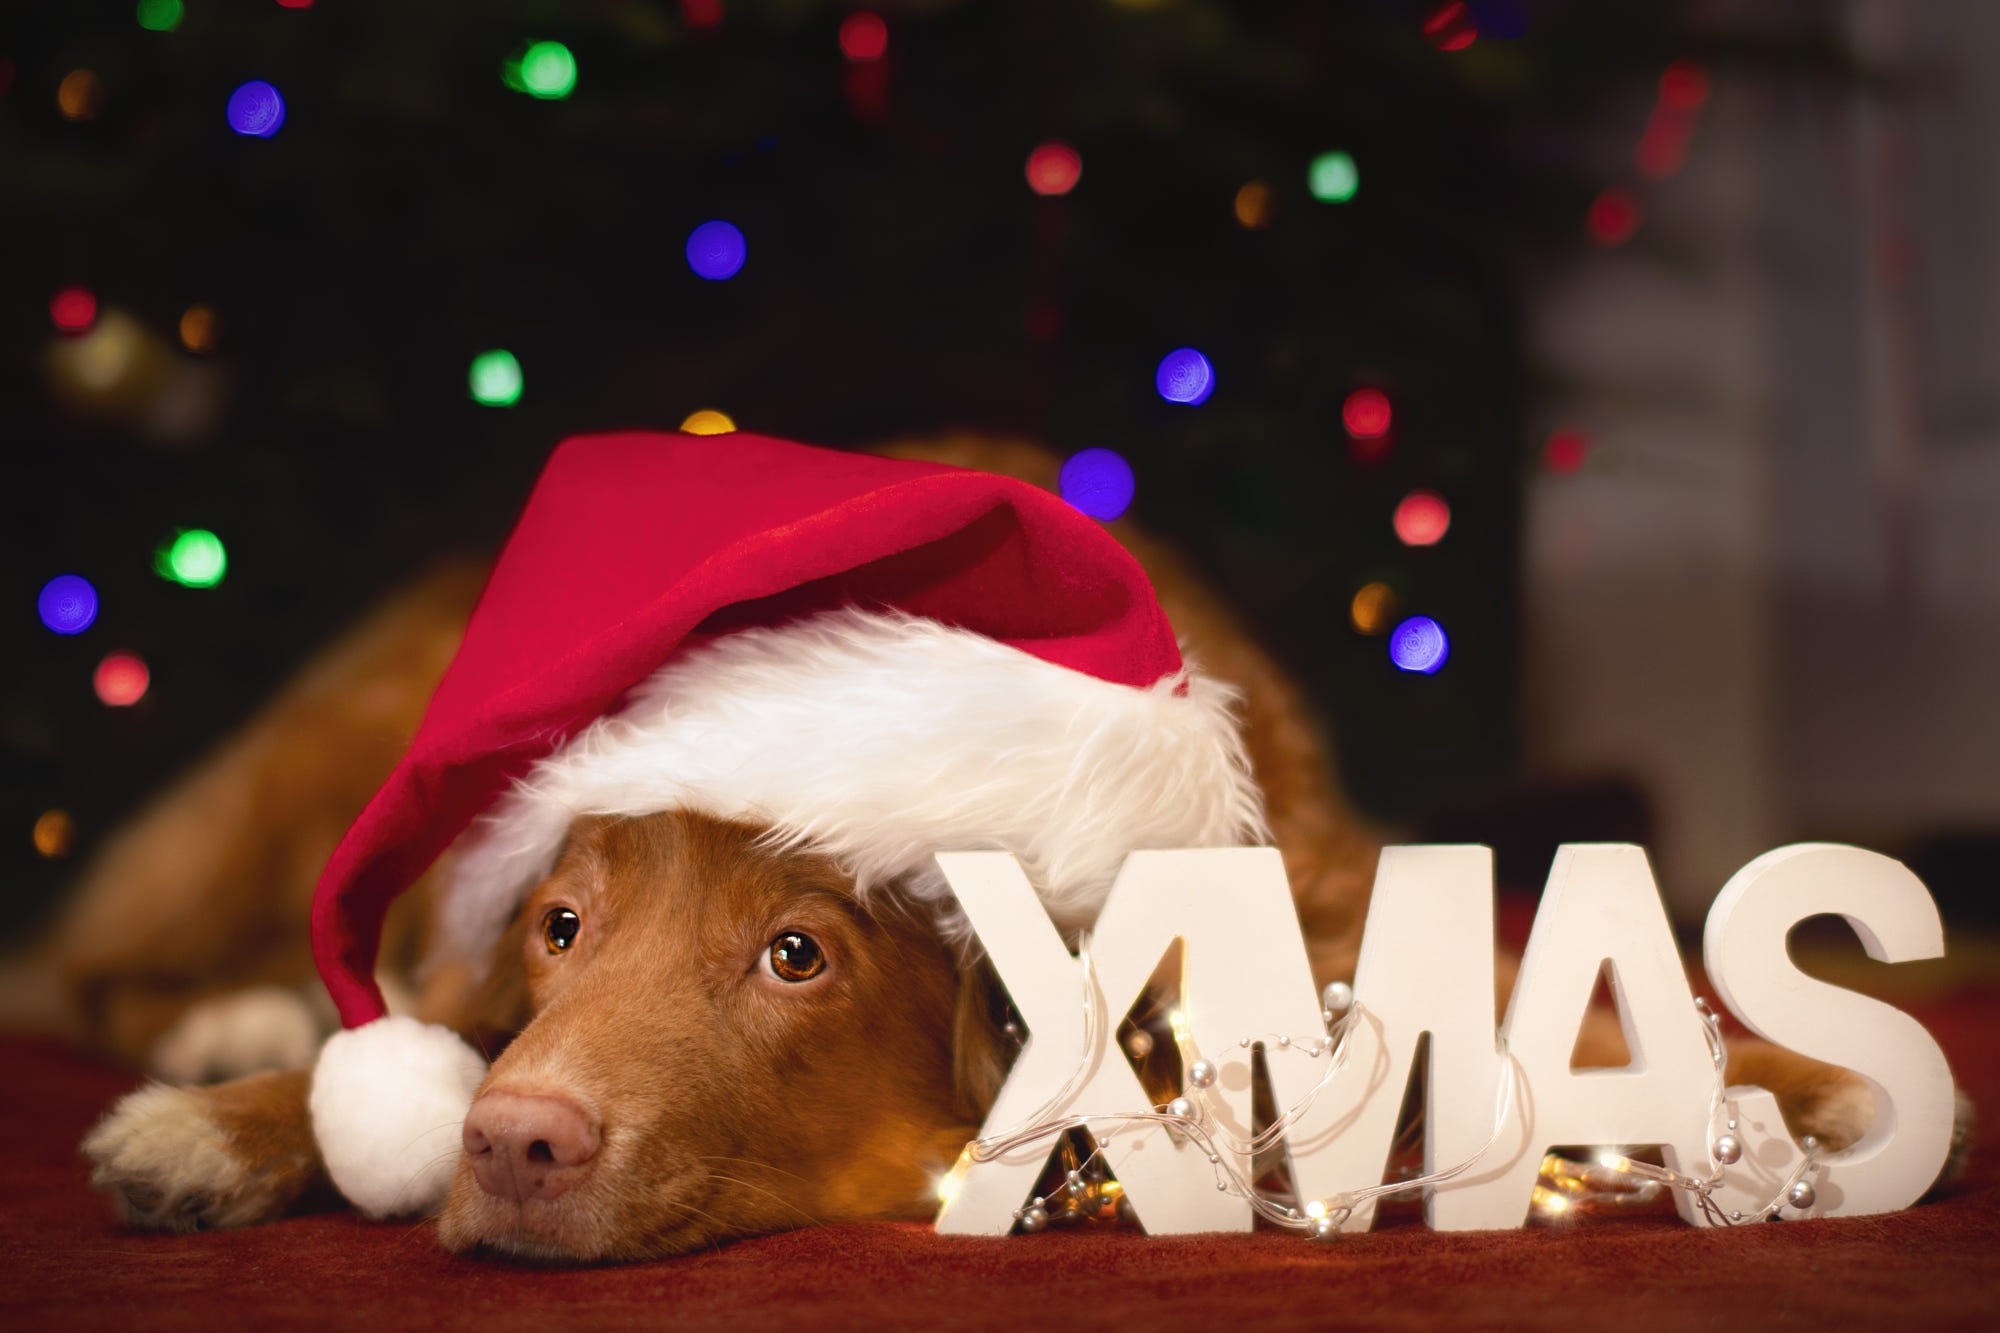 Скачать картинку Животные, Собаки, Рождество, Лабрадор Ретривер, Шляпа Санты в телефон бесплатно.